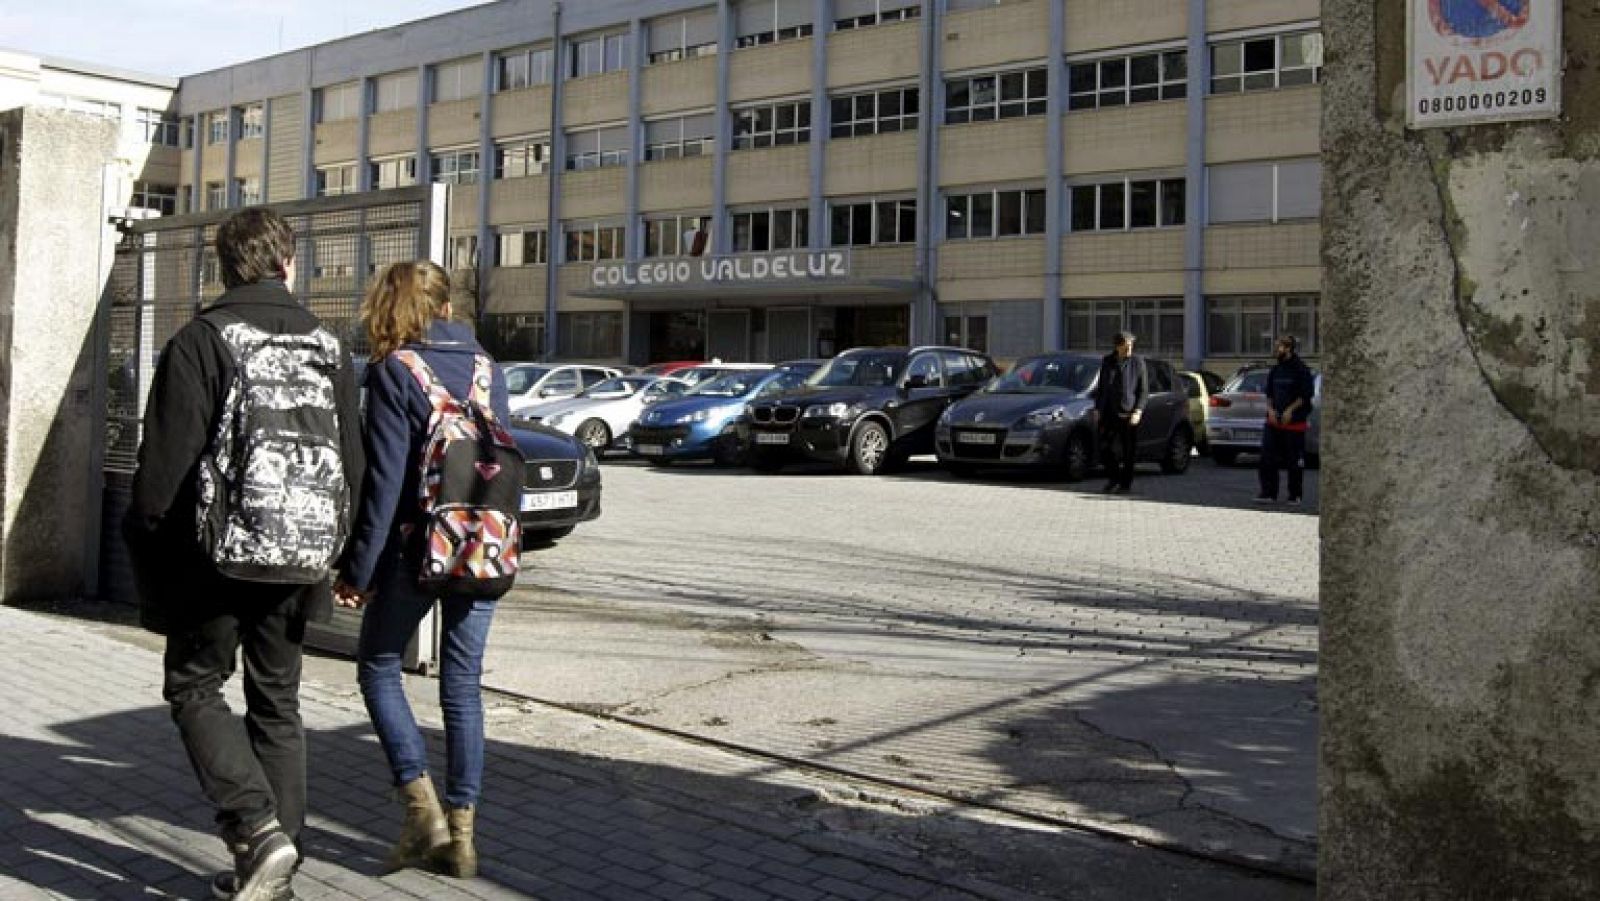 El juez ordena el ingreso en prisión del profesor acusado de abusos sexuales a menores en Madrid